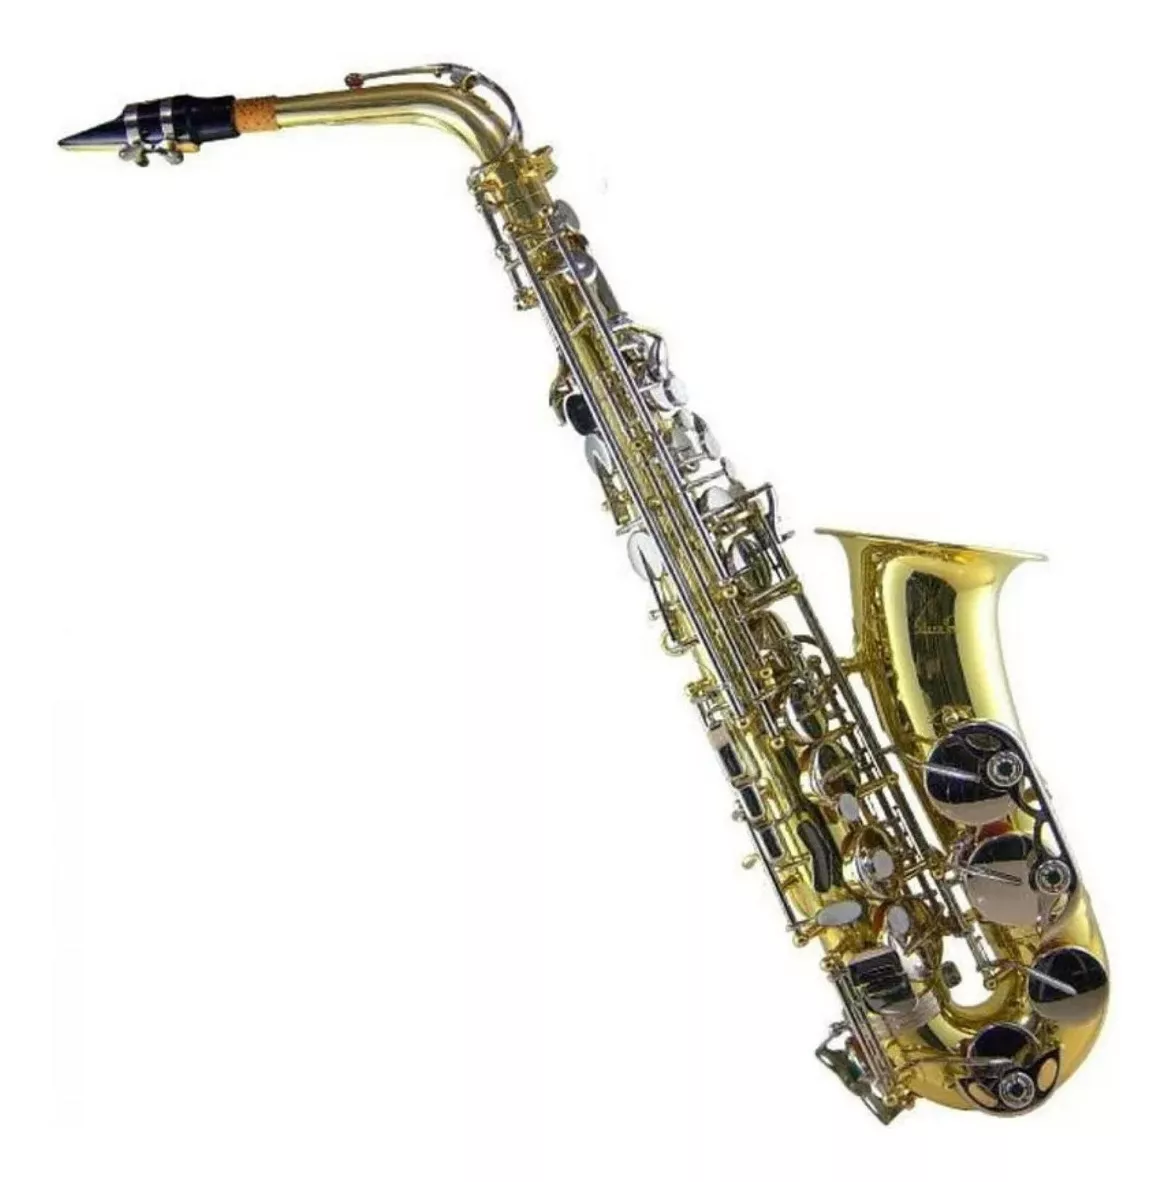 Tercera imagen para búsqueda de saxofon alto